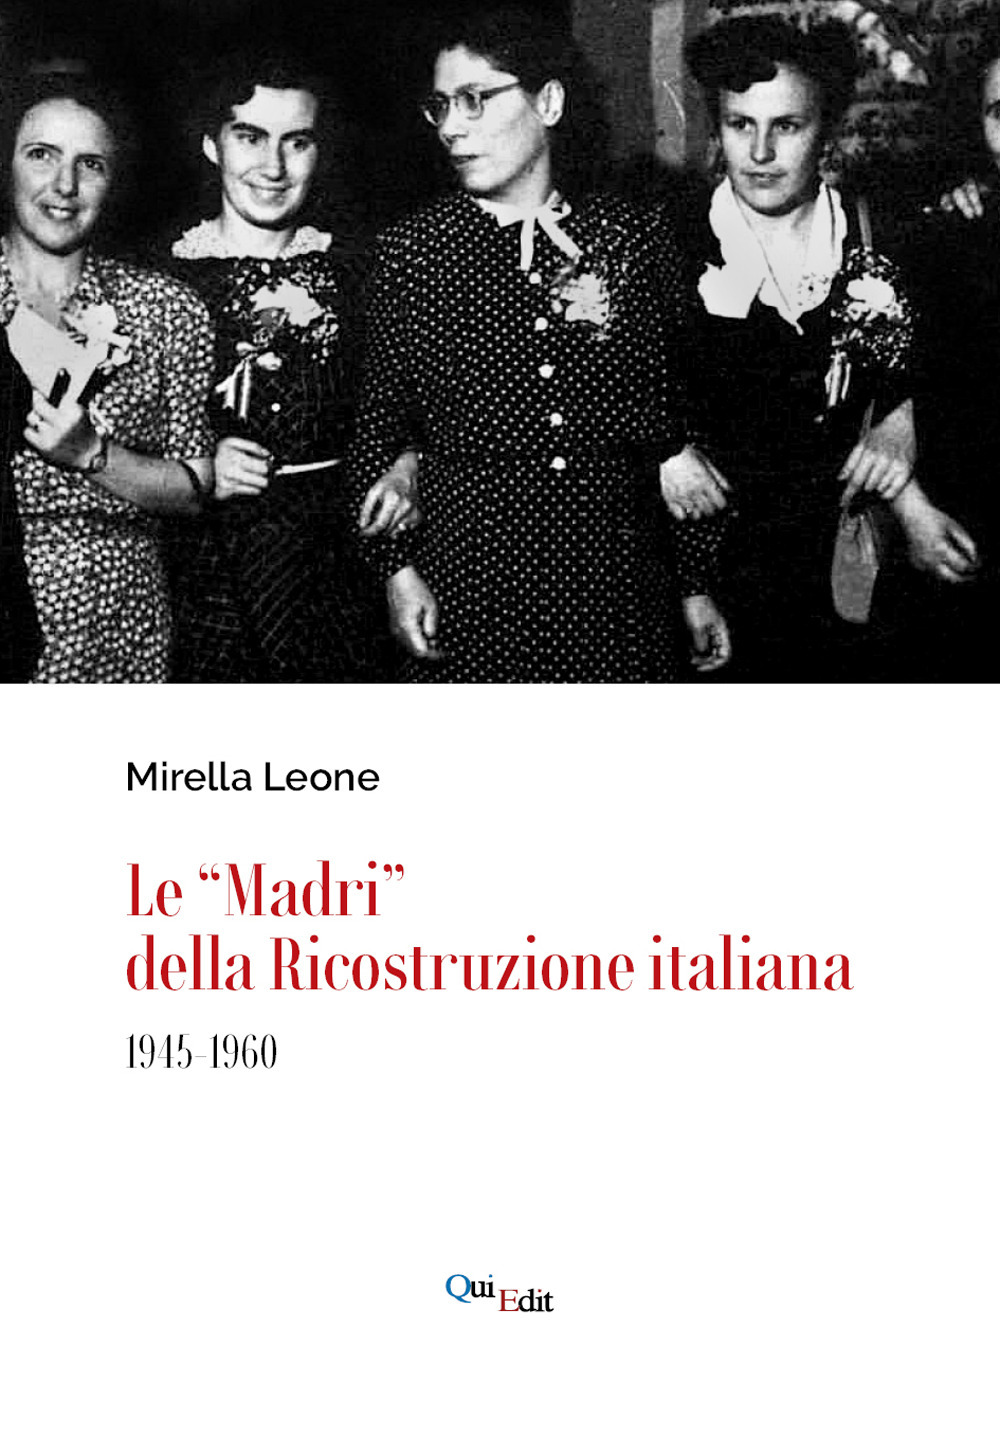 Libri Mirella Leone - Le Madri Della Ricostruzione Italiana (1945-1960) NUOVO SIGILLATO, EDIZIONE DEL 30/09/2021 SUBITO DISPONIBILE